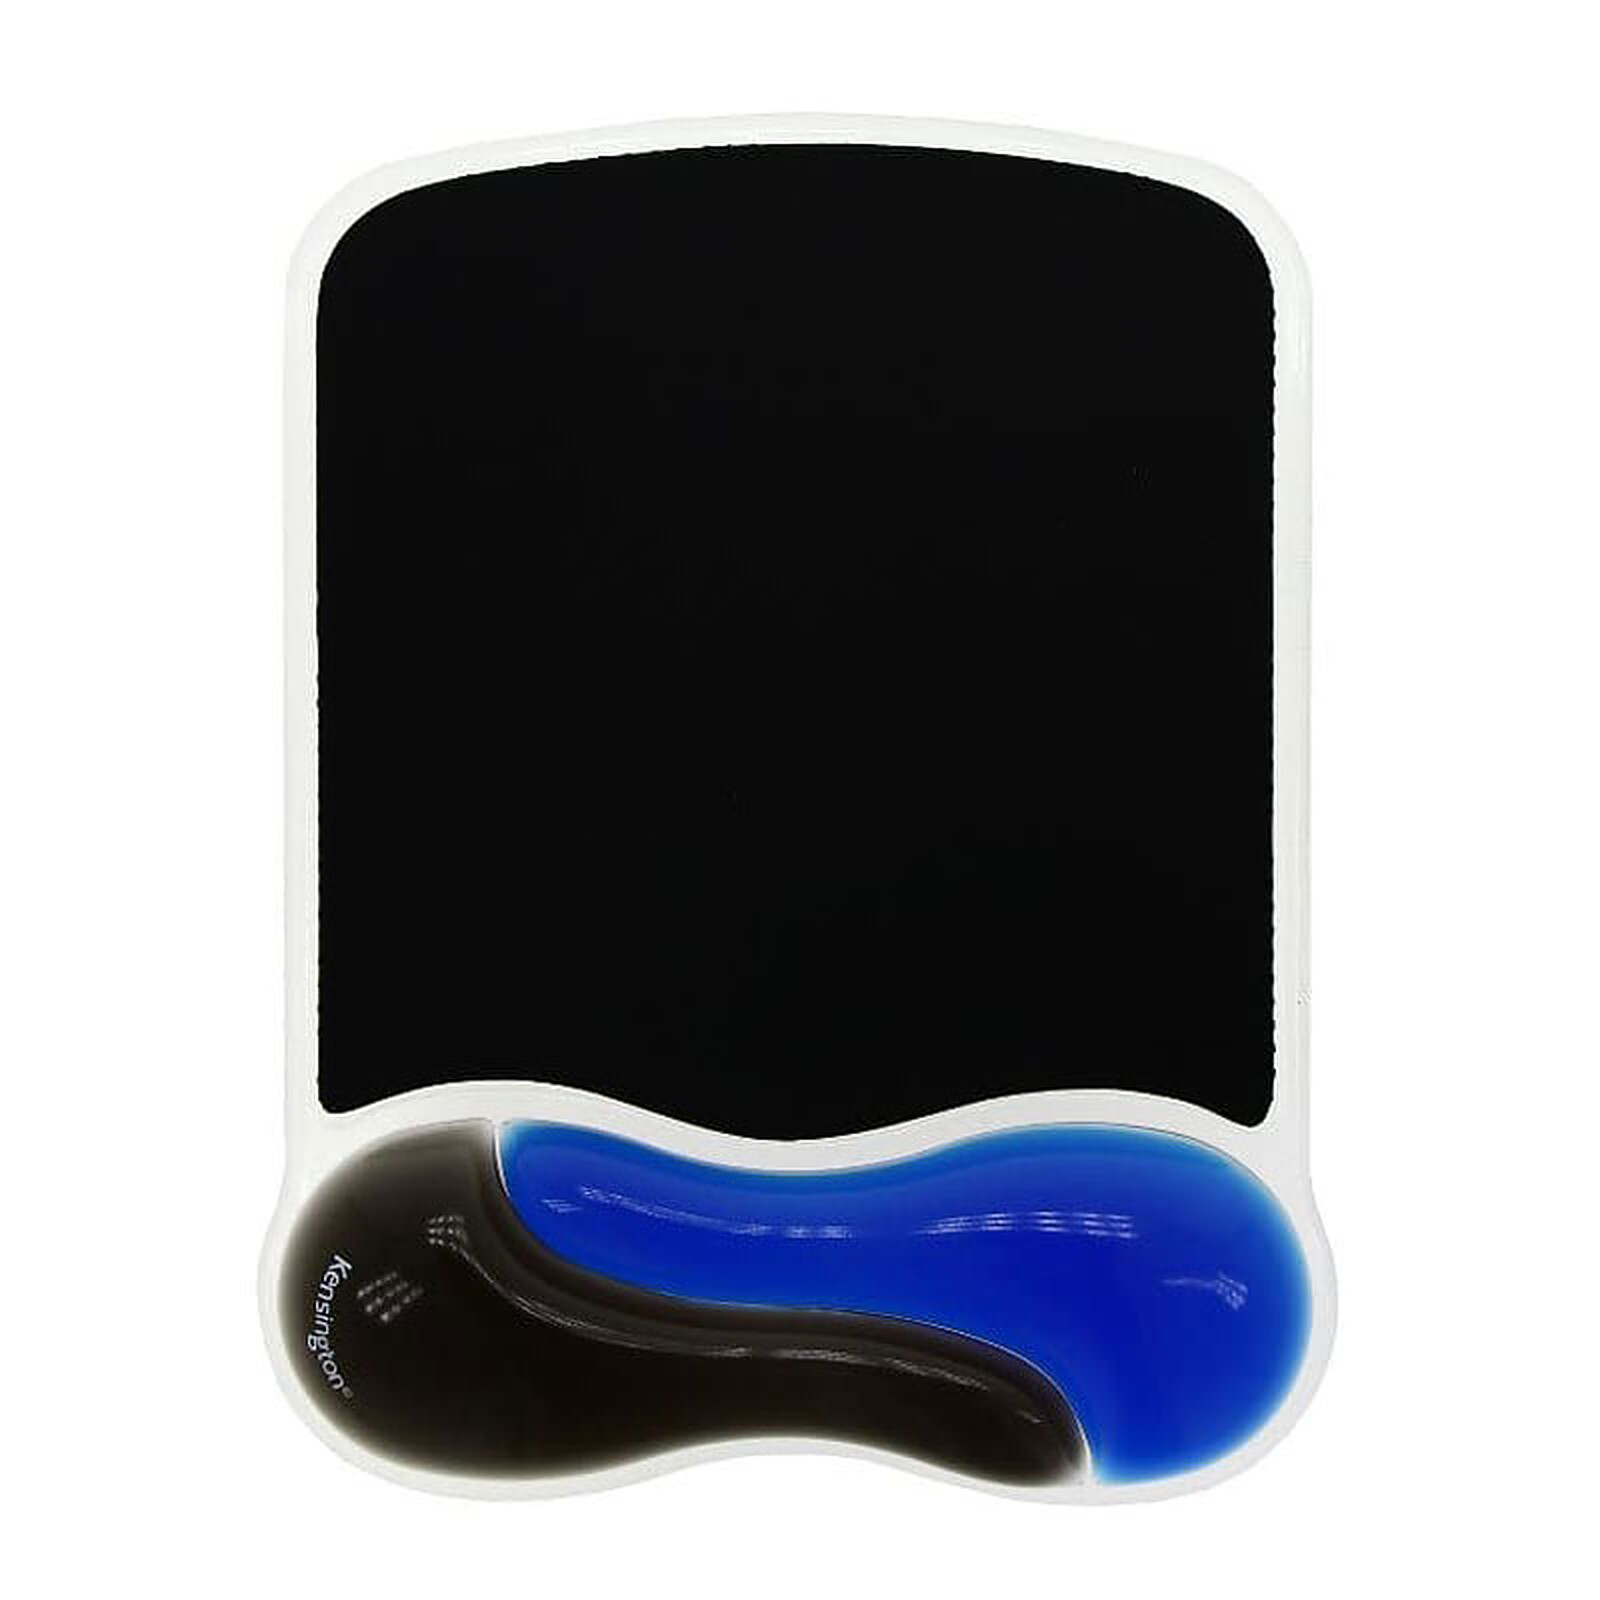 Kensington Duo Gel Wave Mouse Pad Wrist Rest Blue